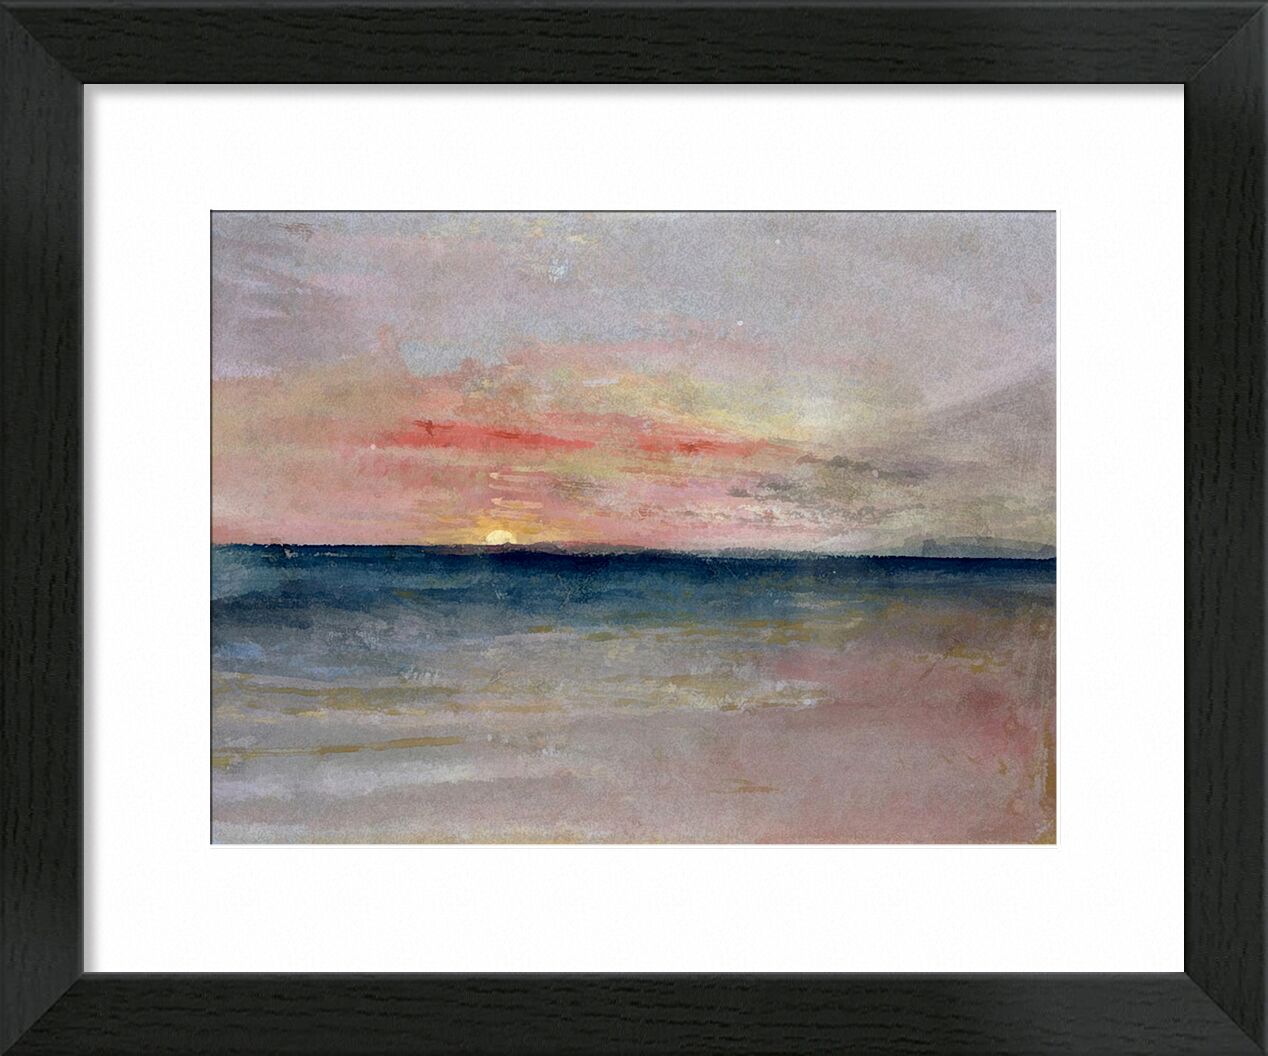 Sunset - TURNER von Bildende Kunst, Prodi Art, TURNER, Sommer-, Strand, Meer, Himmel, Sonne, Malerei, Sonnenuntergang